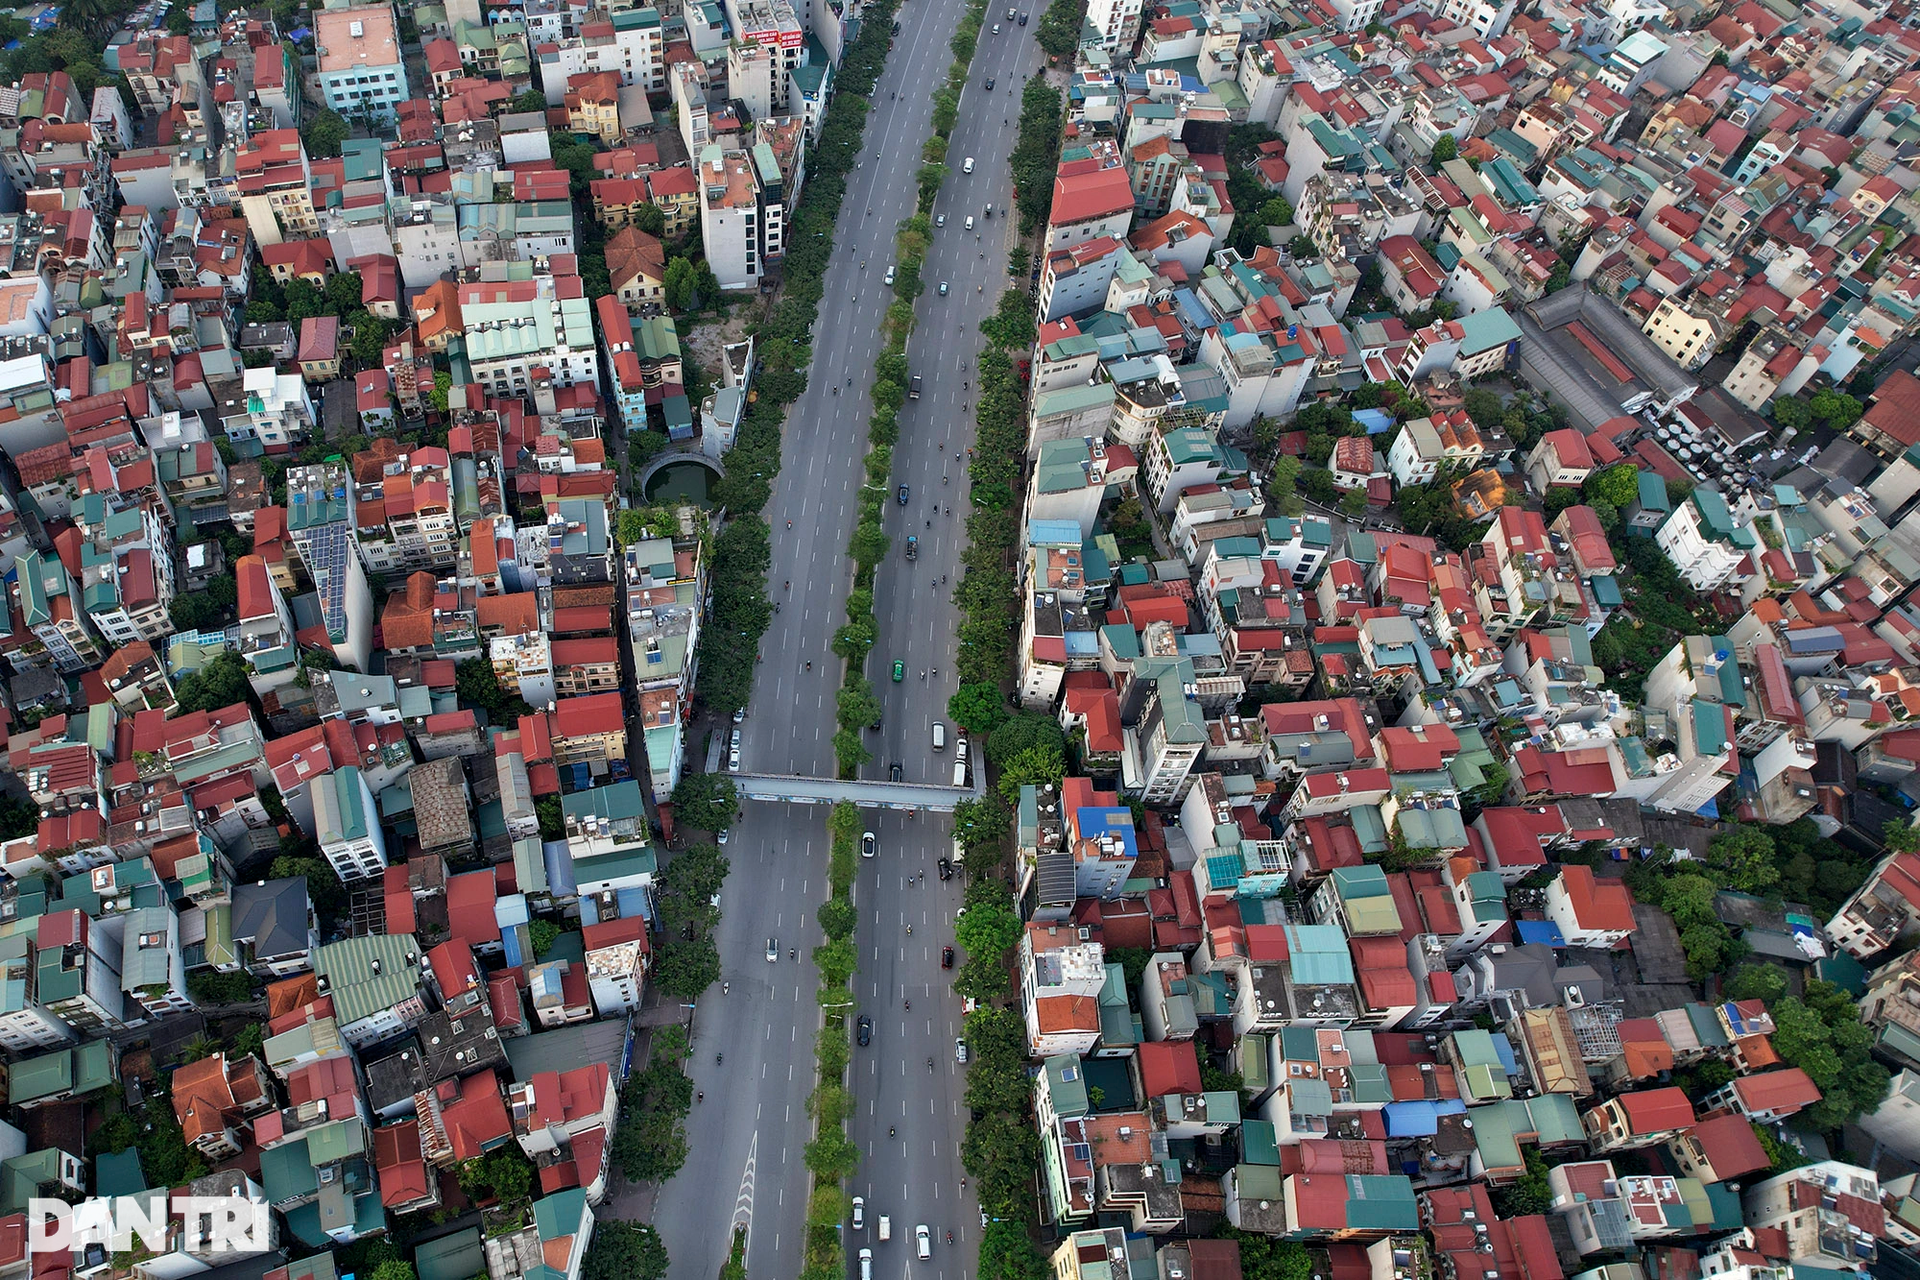 Nhà cửa dày đặc không còn khoảng trống khi nhìn đô thị Hà Nội từ trên cao - 13